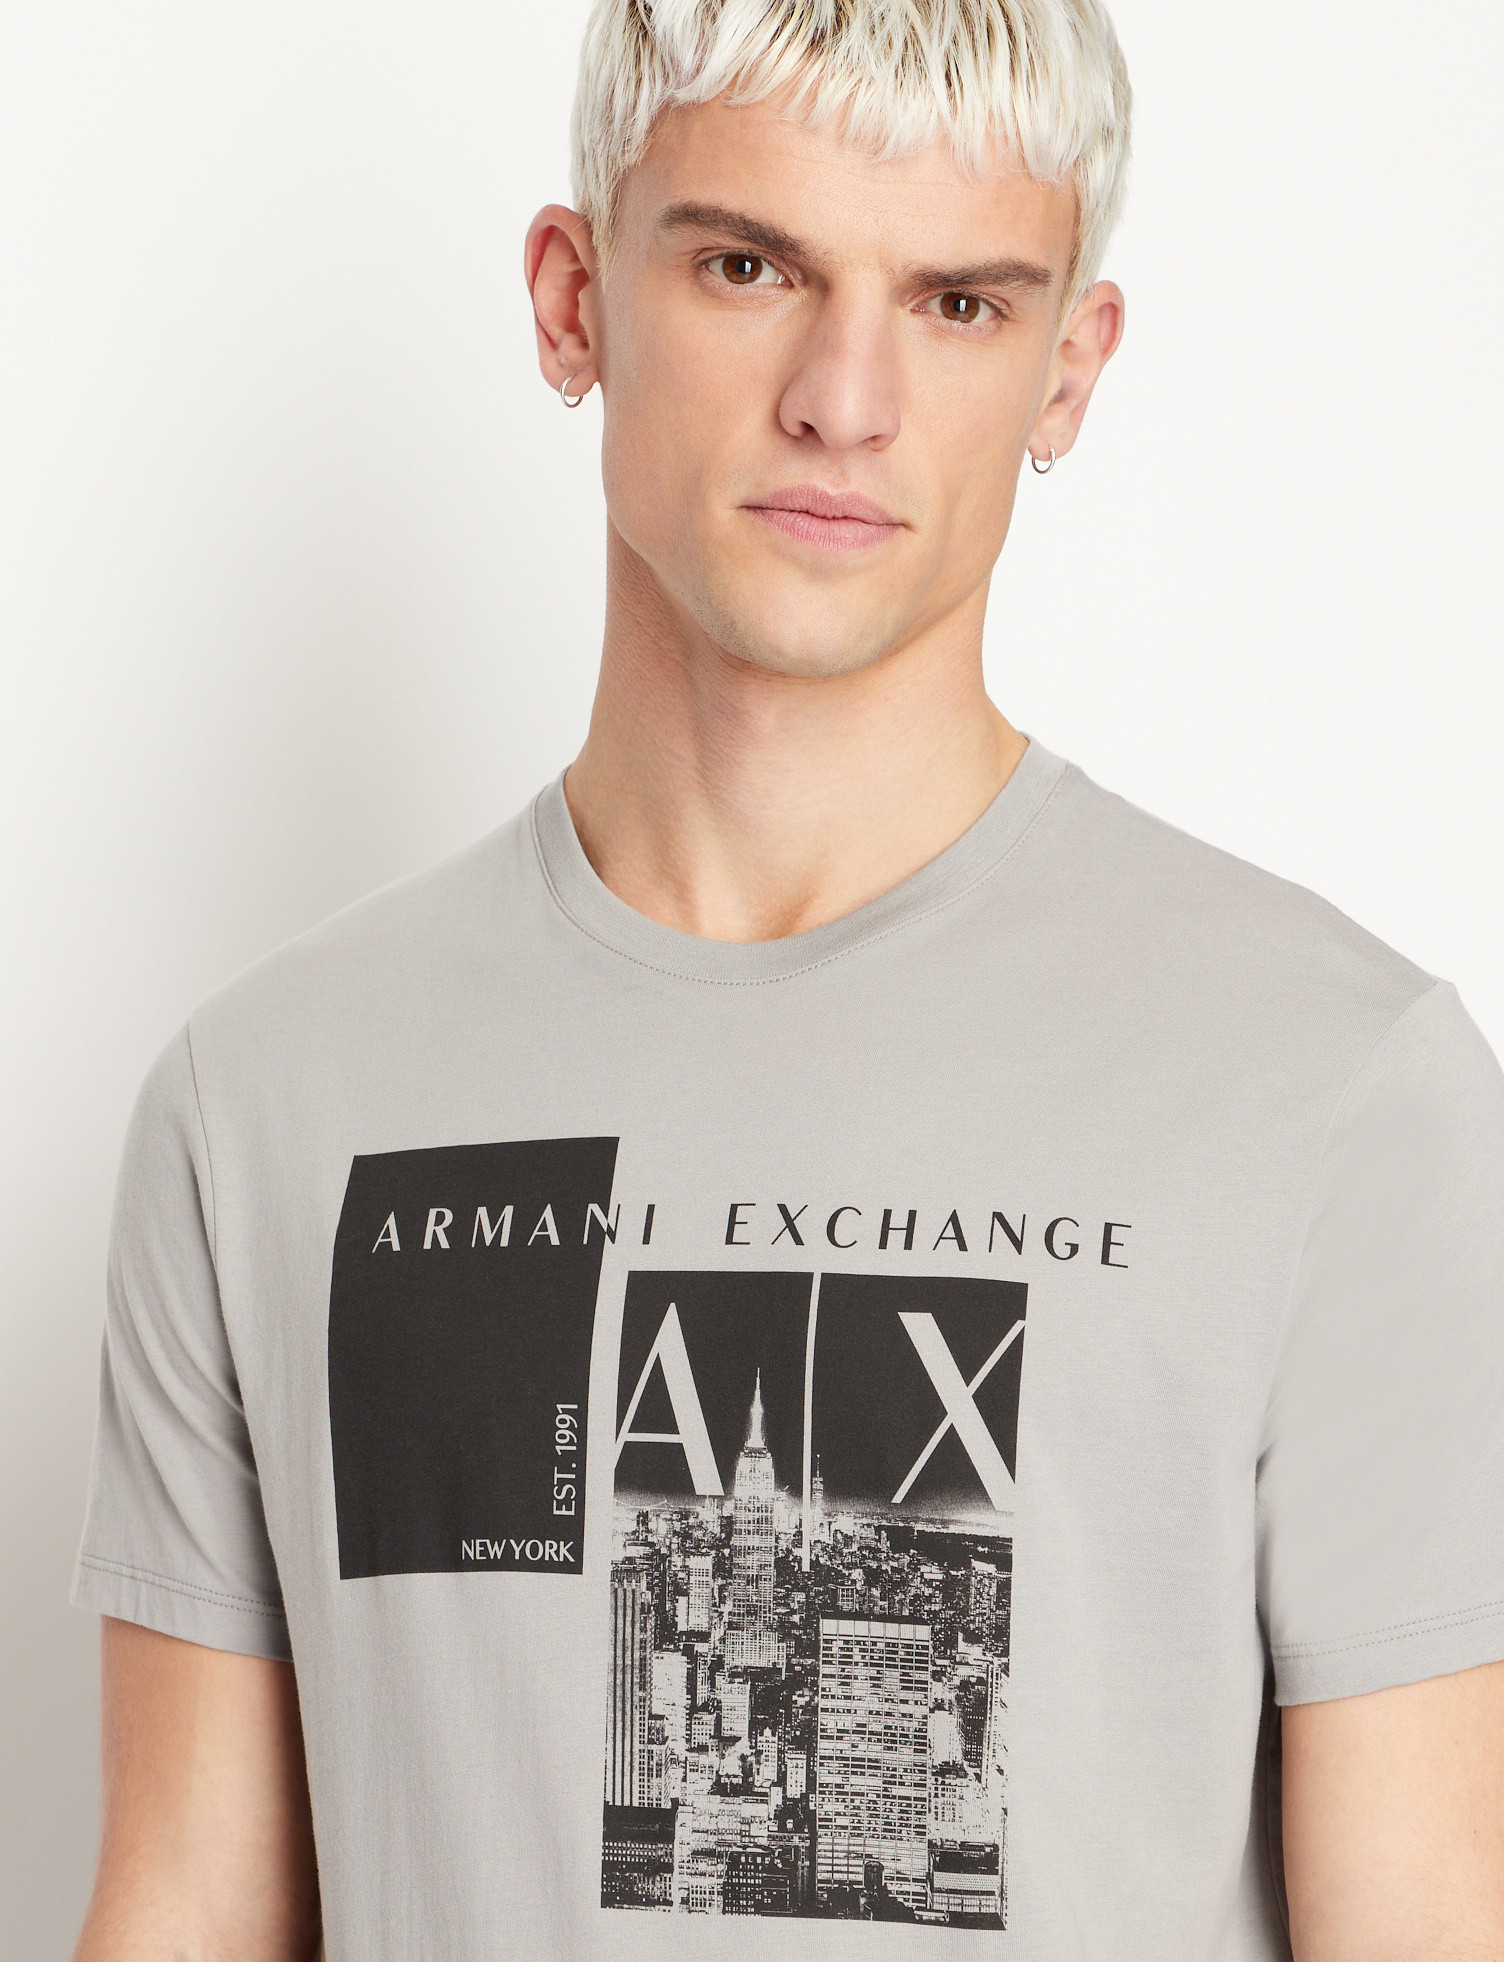 Armani Exchange - Regular fit graphic print T-shirt, Dark Grey, large image number 3